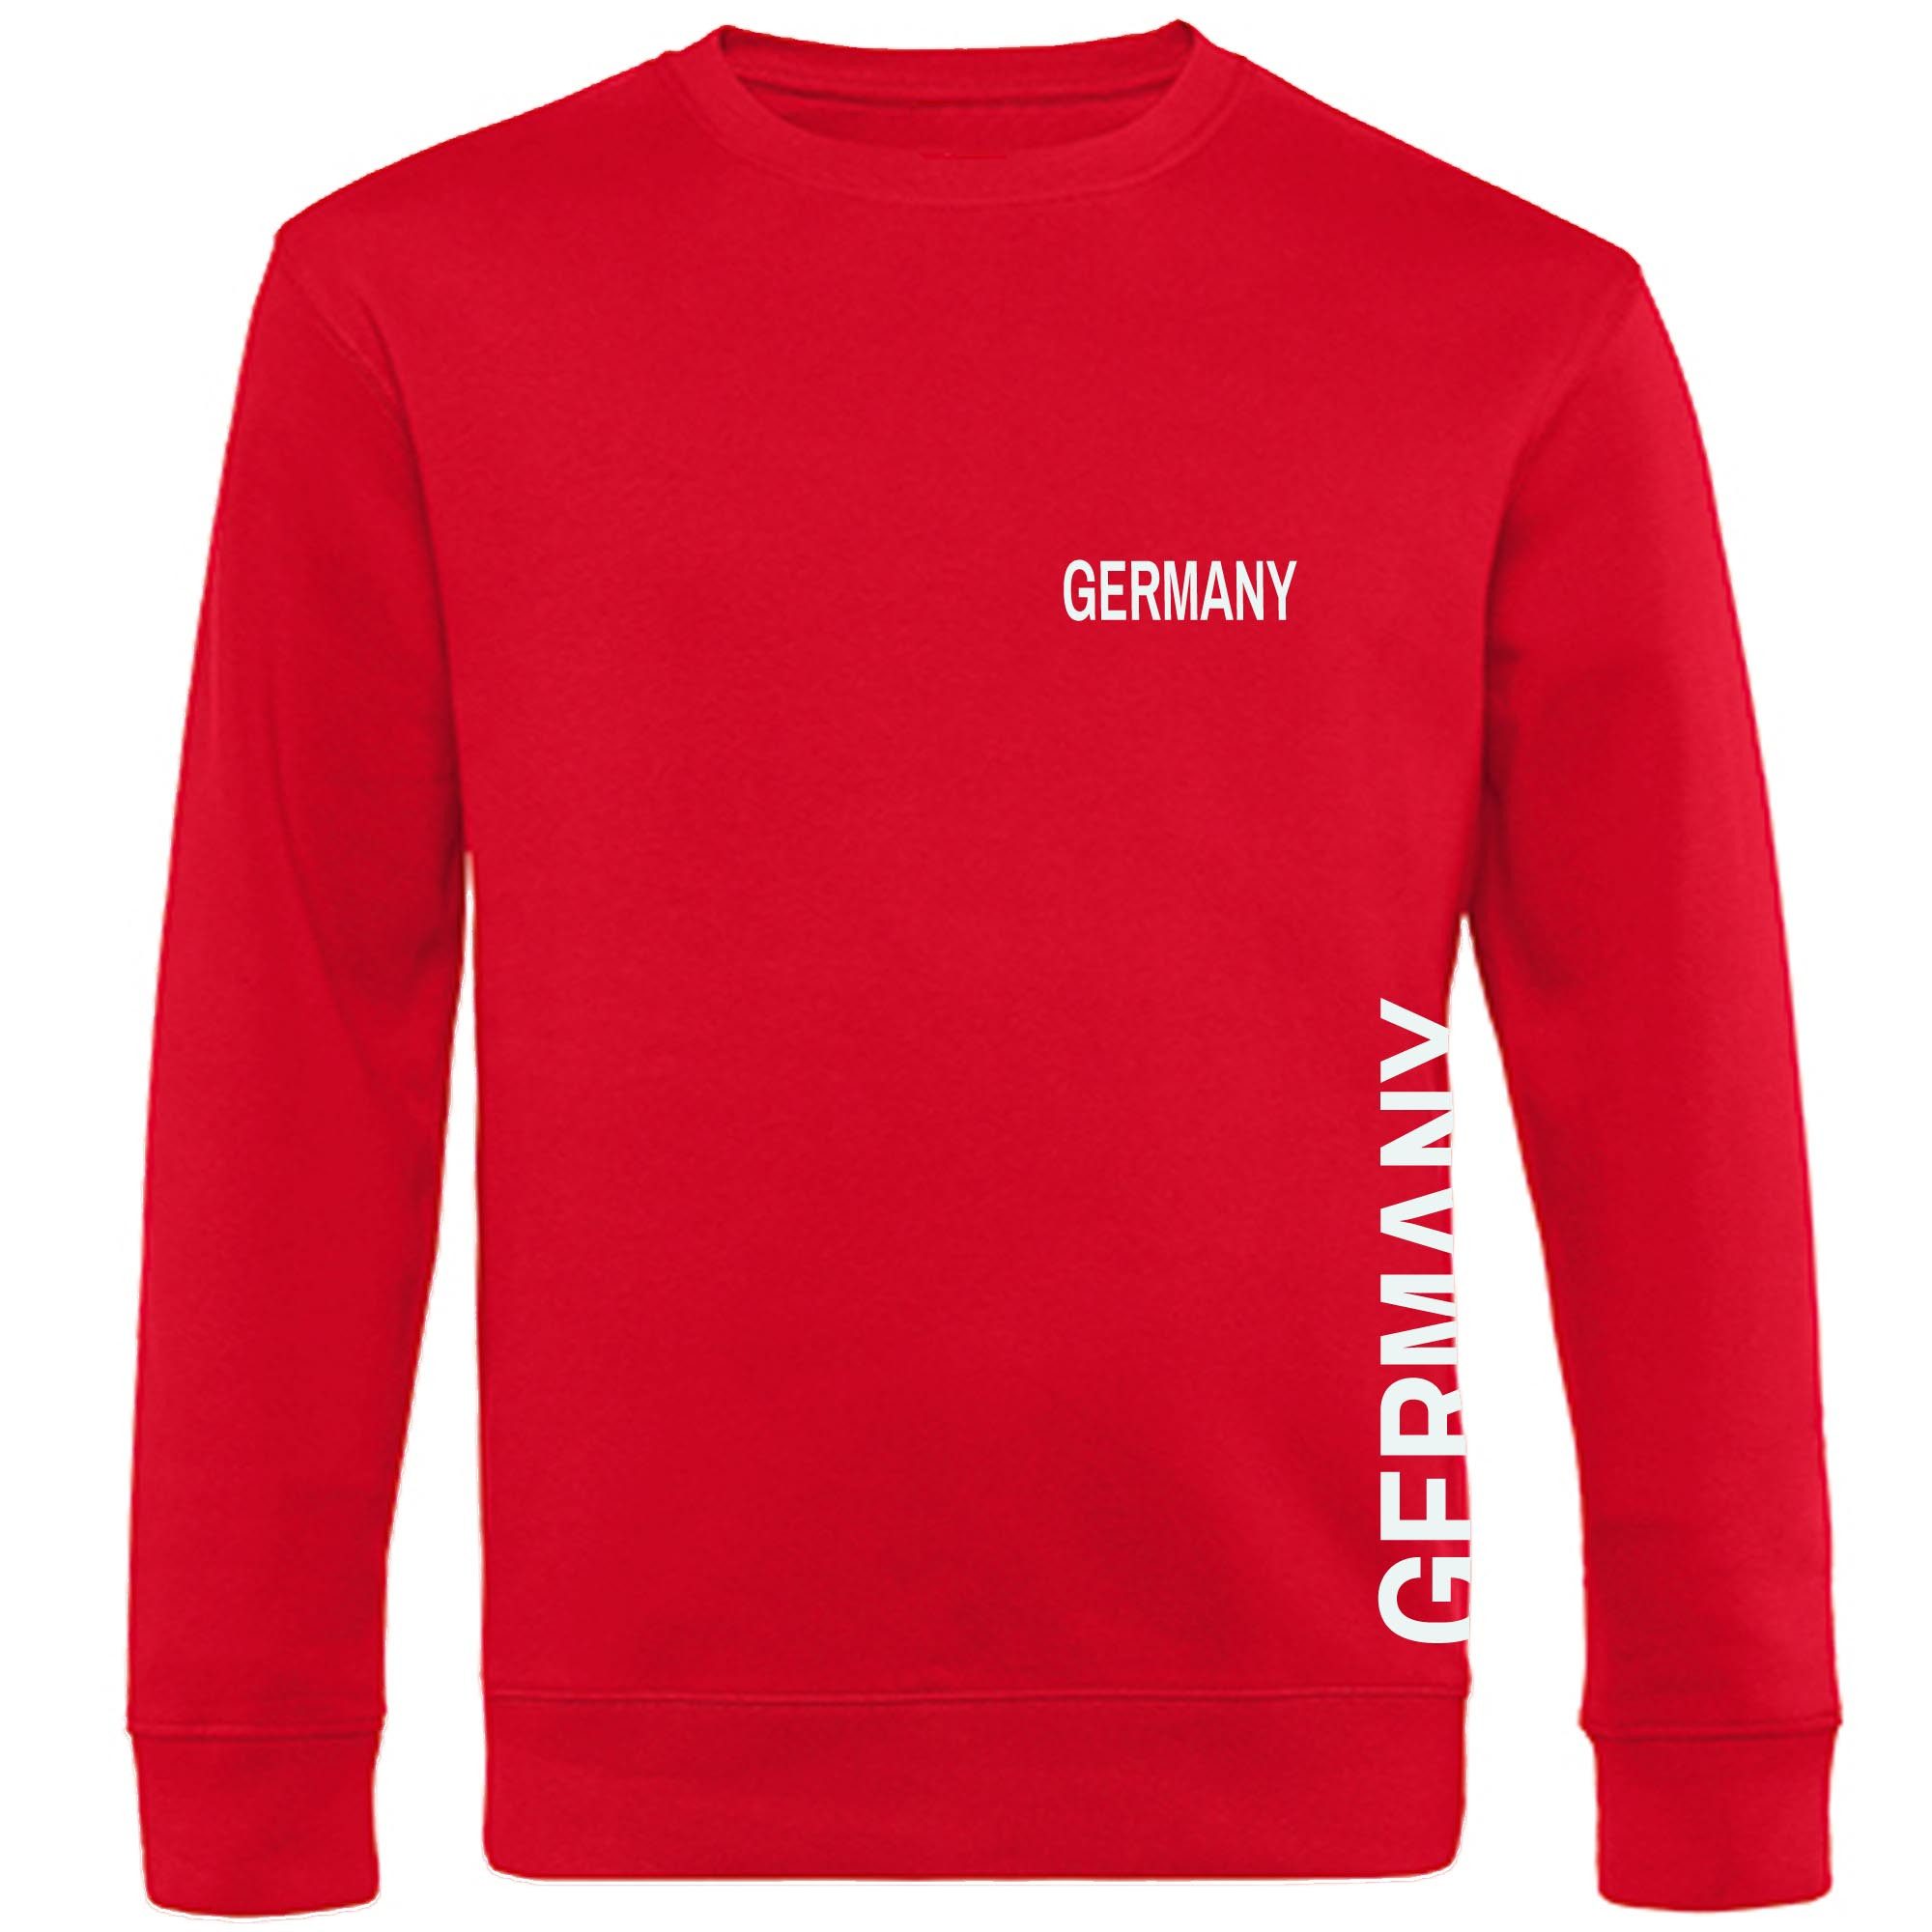 multifanshop Sweatshirt Germany - Brust & Seite - Pullover